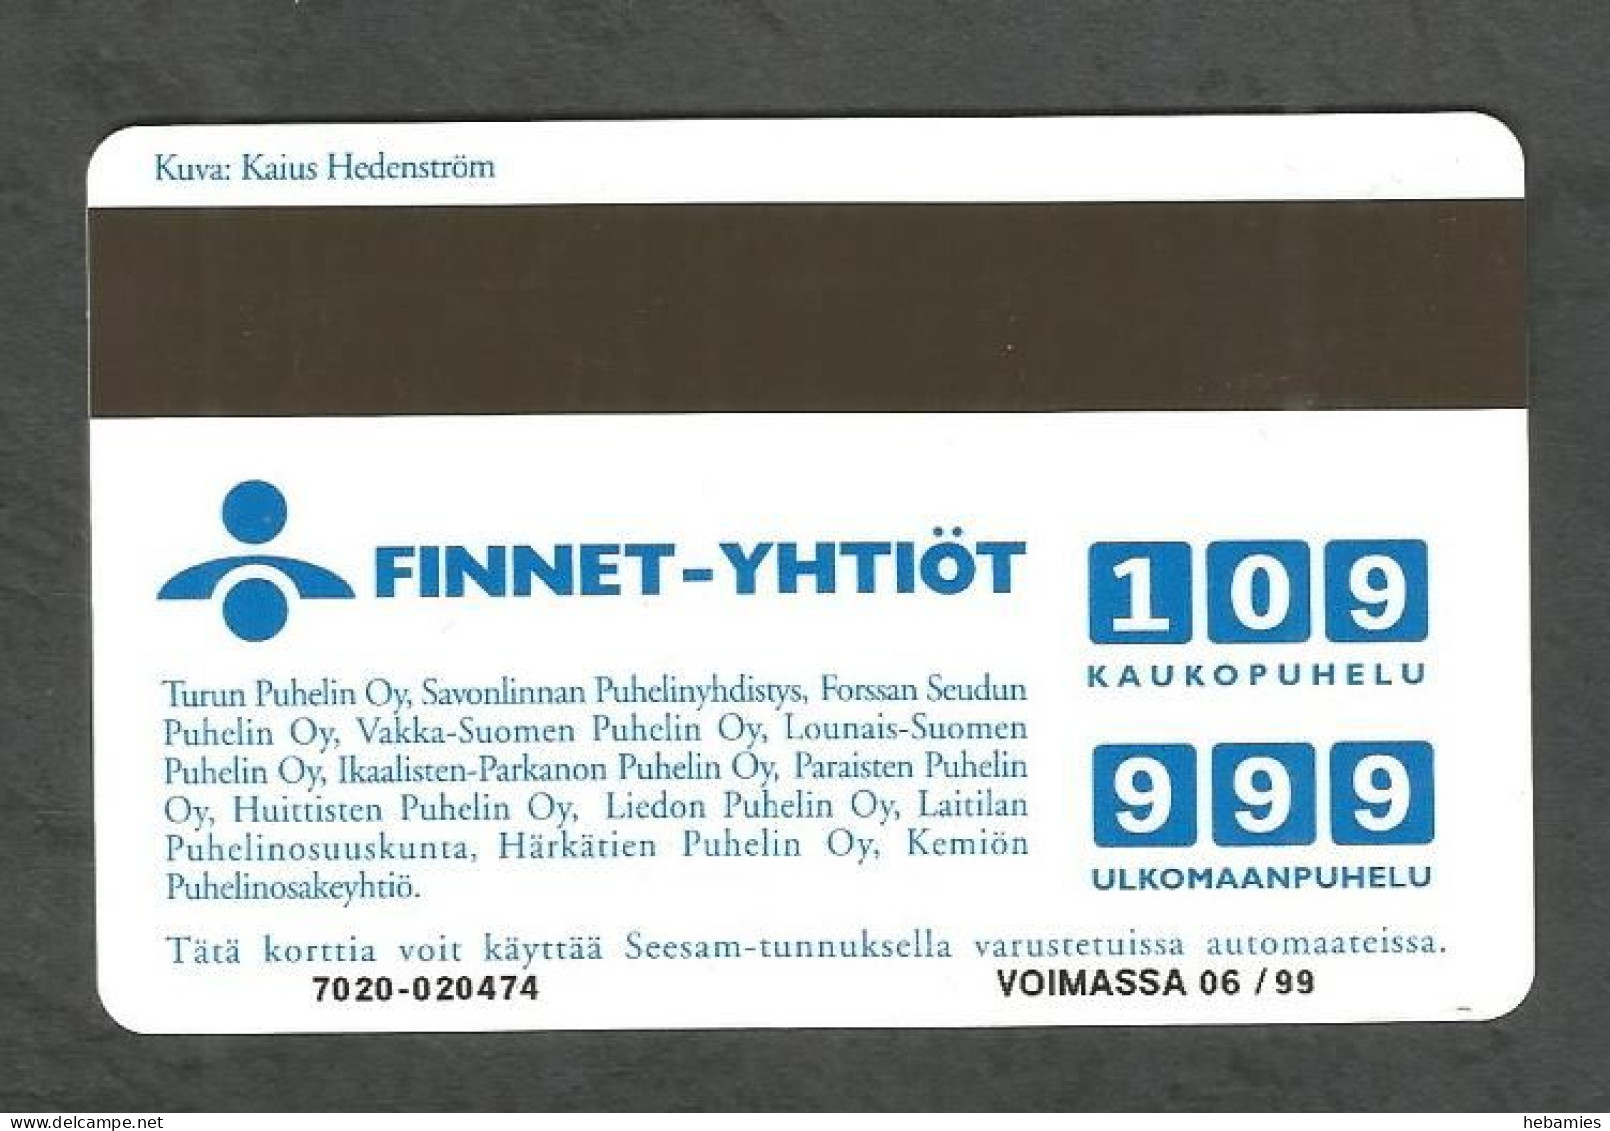 SHEEP In The ARCHIPELAGO - 10 FIM 1997  - Magnetic Card - D332 - FINLAND - - Finnland